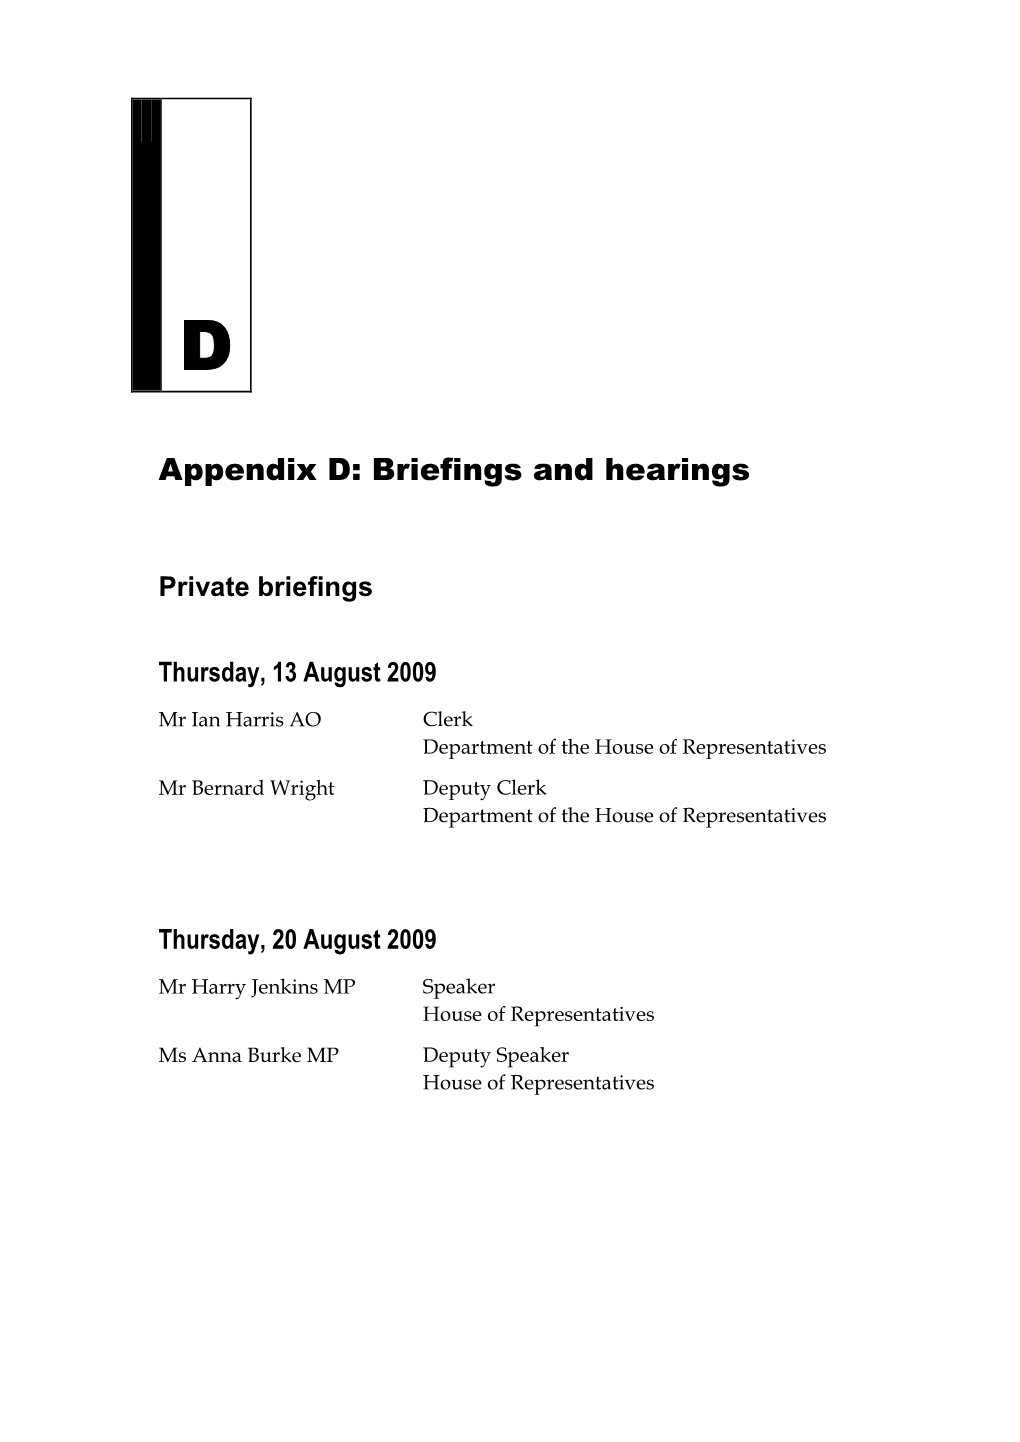 Appendix D: Briefings and Hearings